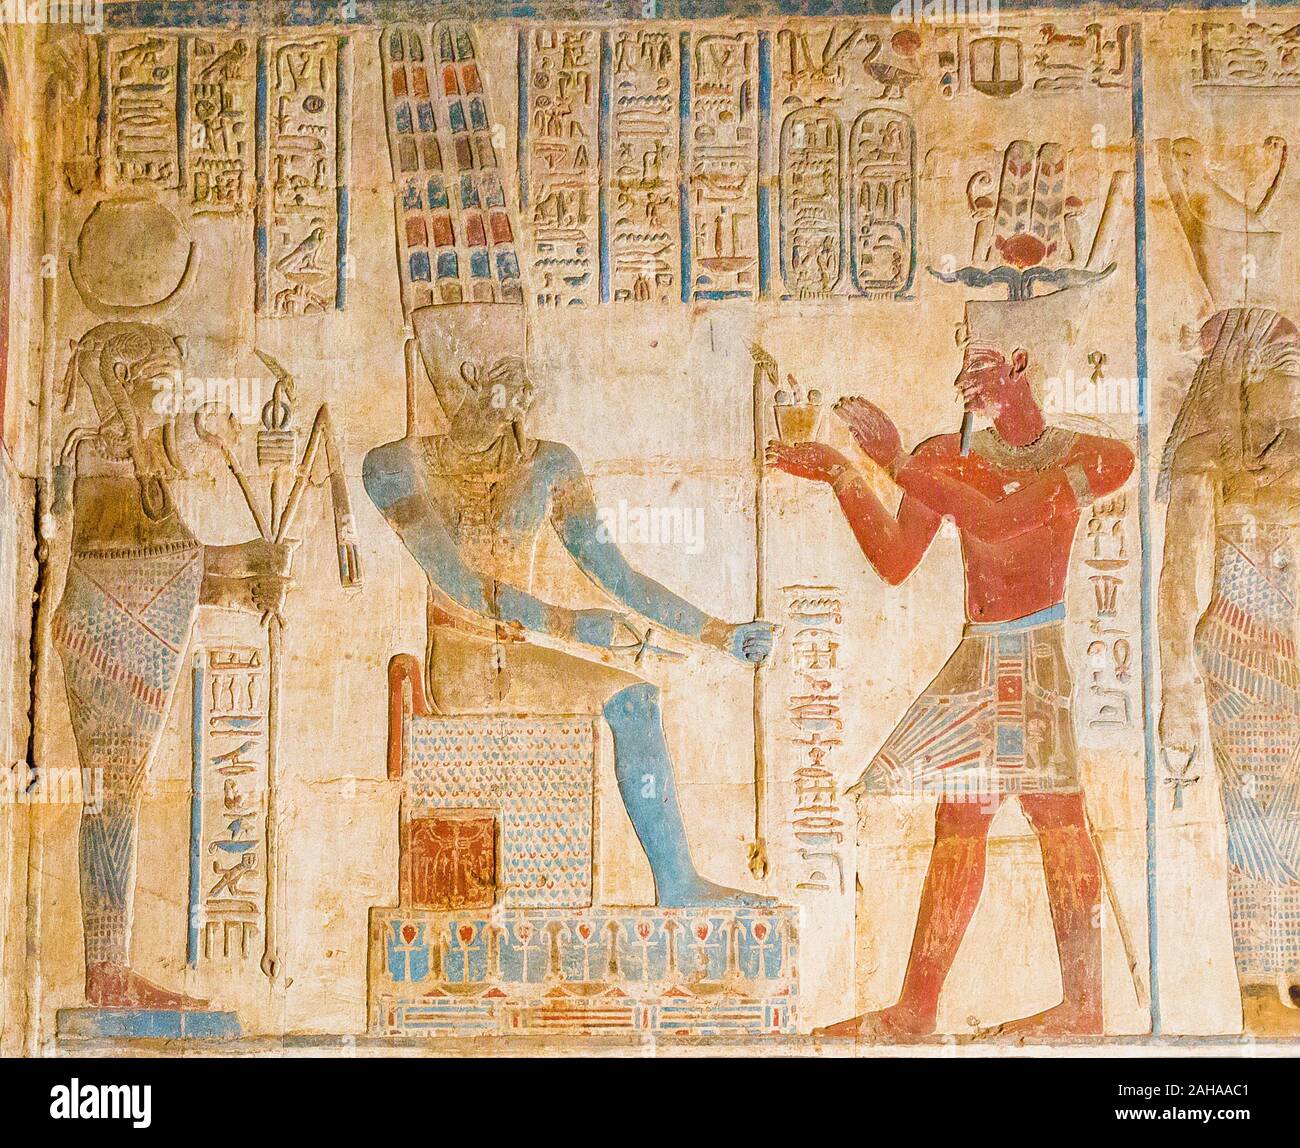 Patrimonio Mundial de la UNESCO, de Tebas en Egipto, sitio de Karnak, templo ptolemaico de Opet. El rey, vistiendo un taparrabos almidonada, censes dios Amun. Foto de stock